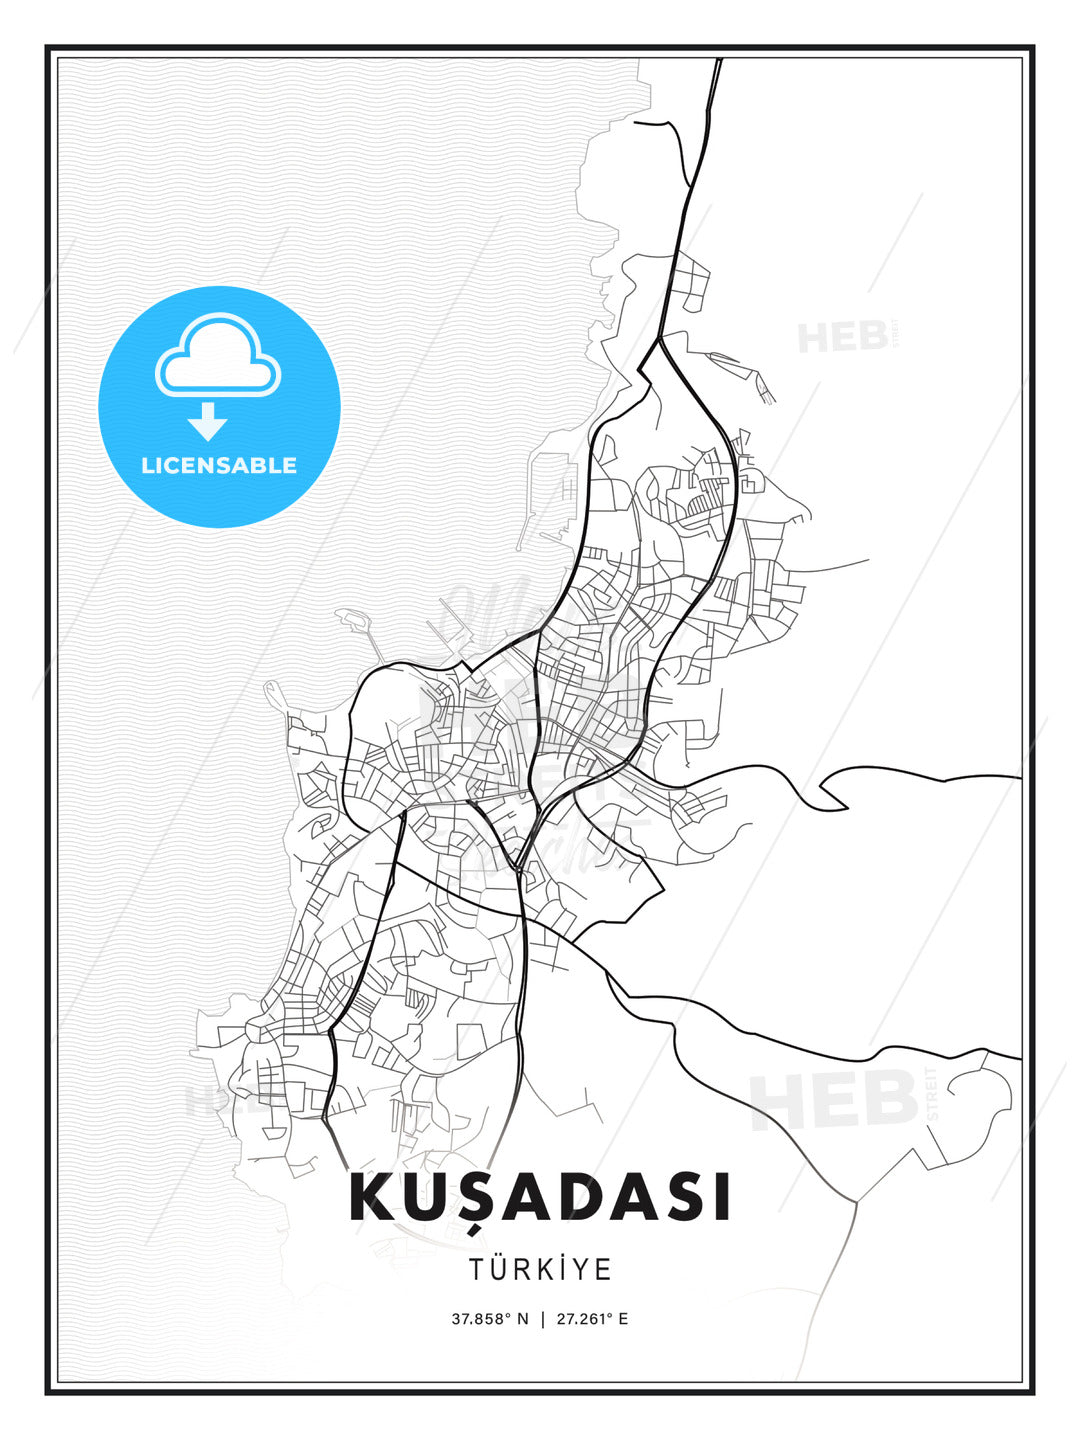 KUŞADASI / Kuşadası, Turkey, Modern Print Template in Various Formats - HEBSTREITS Sketches